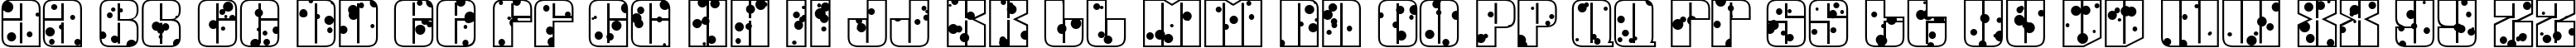 Пример написания английского алфавита шрифтом a_GlobusInkBlots